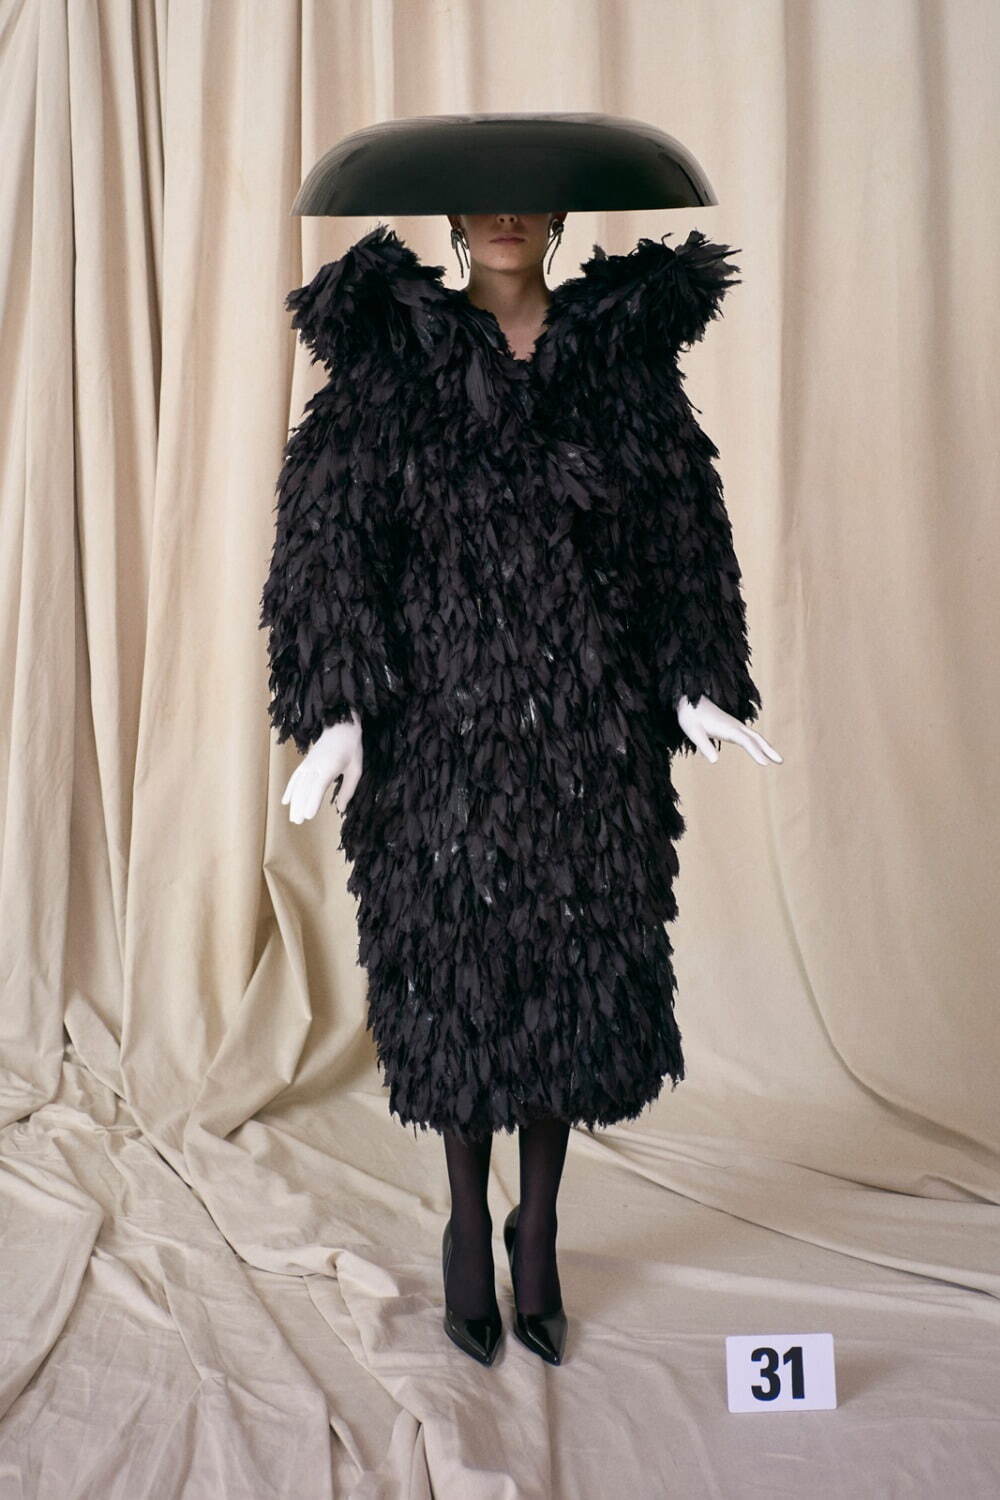 バレンシアガ クチュール(BALENCIAGA Couture ) 2021年冬ウィメンズ&メンズコレクション  - 写真31